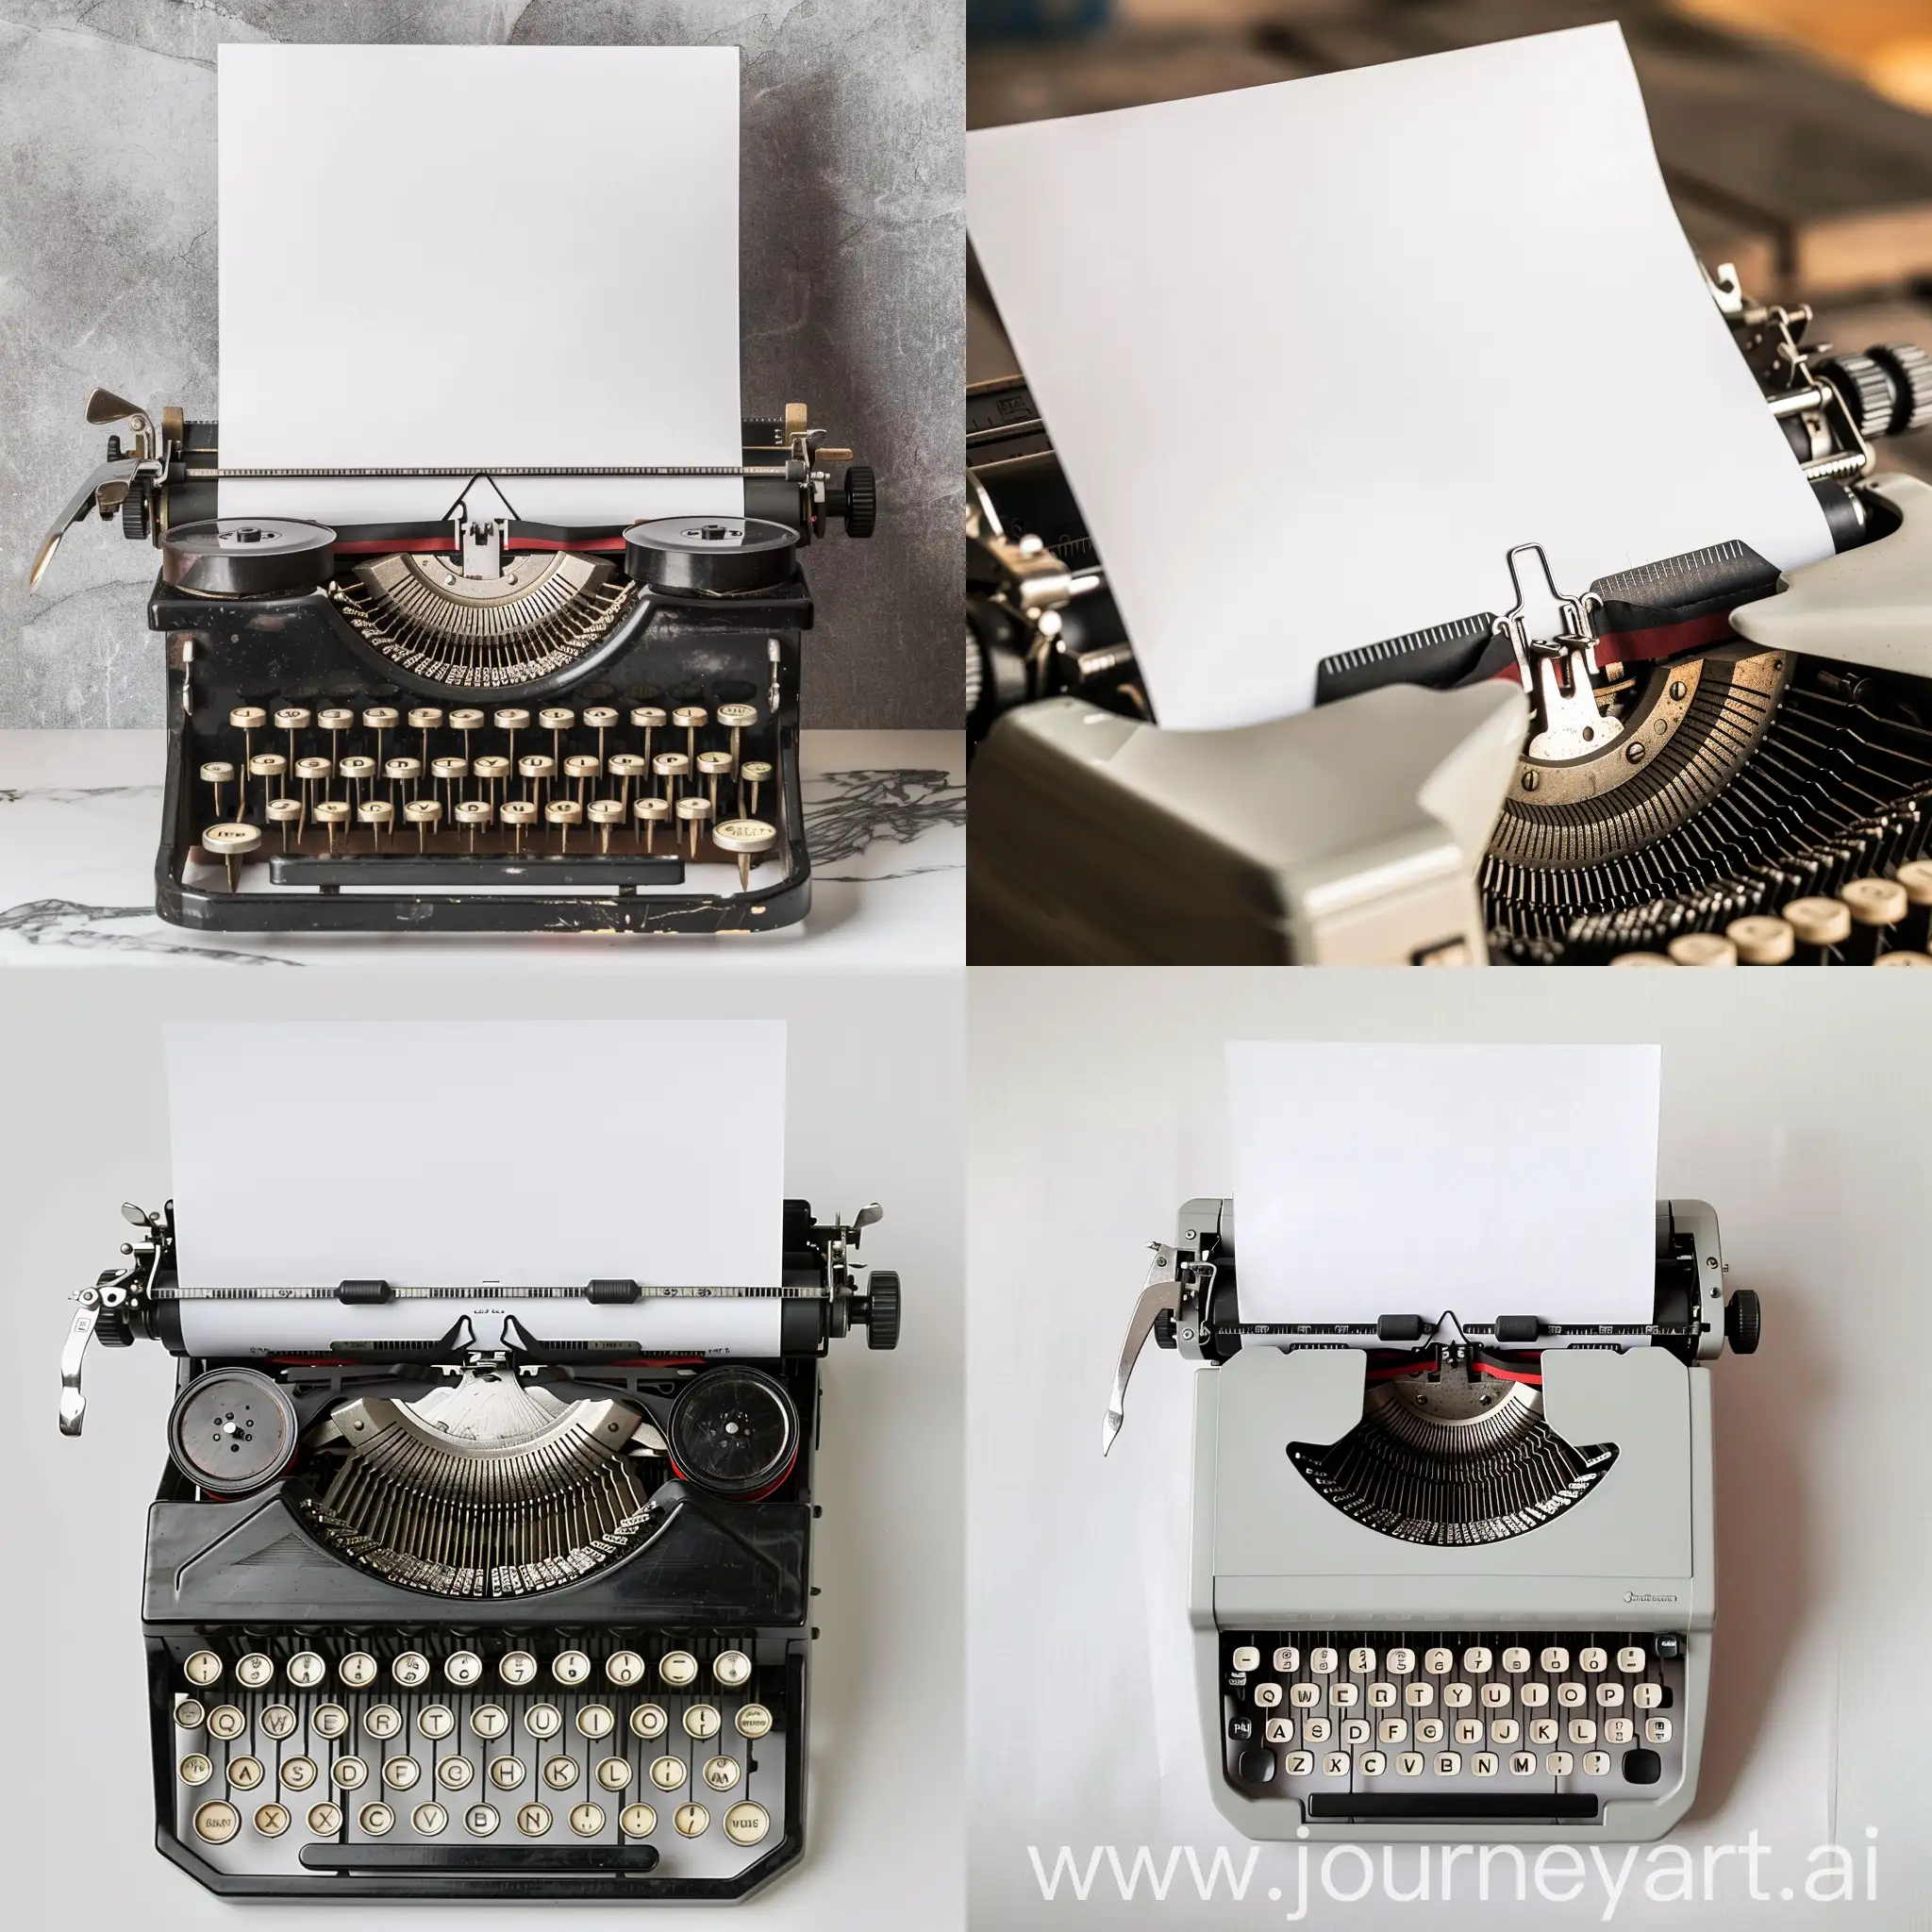 white sheet of paper on a typewriter